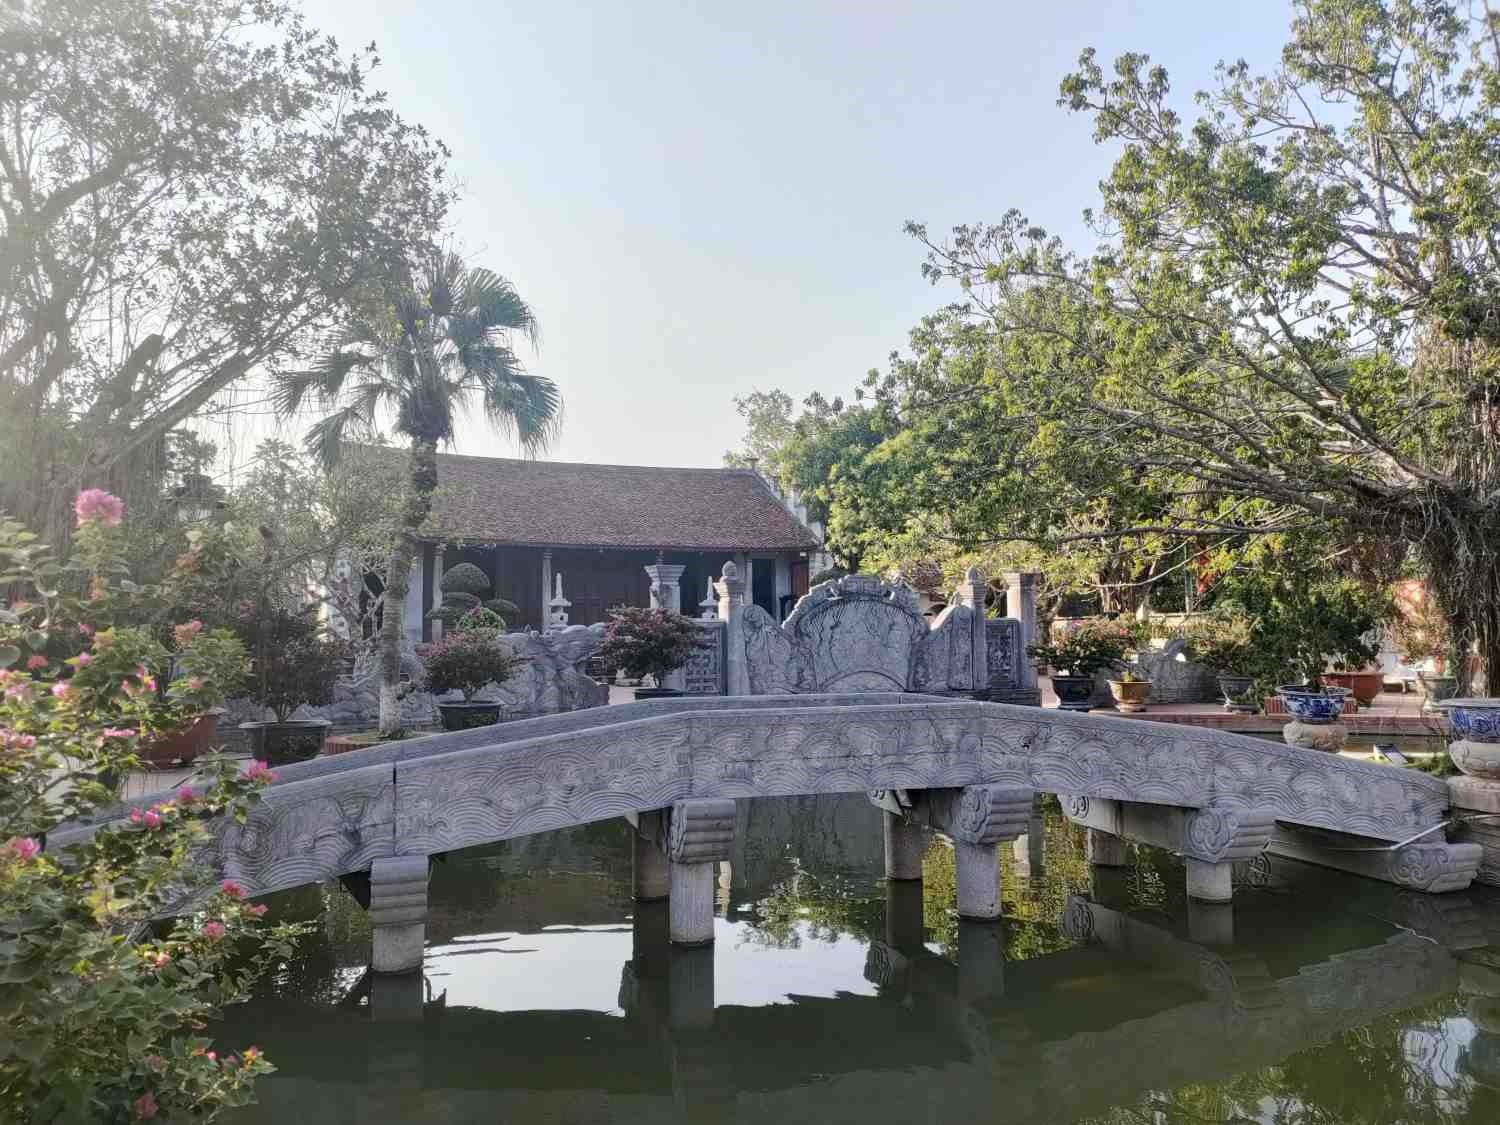 Khu di tích đền Trạng Trình Nguyễn Bỉnh Khiêm rộng gần 13 ha với nhiều điểm tham quan, tọa lạc giữa không gian rộng lớn, thoáng mát. Di tích này được Nhà nước xếp hạng Di tích quốc gia đặc biệt năm 2016.